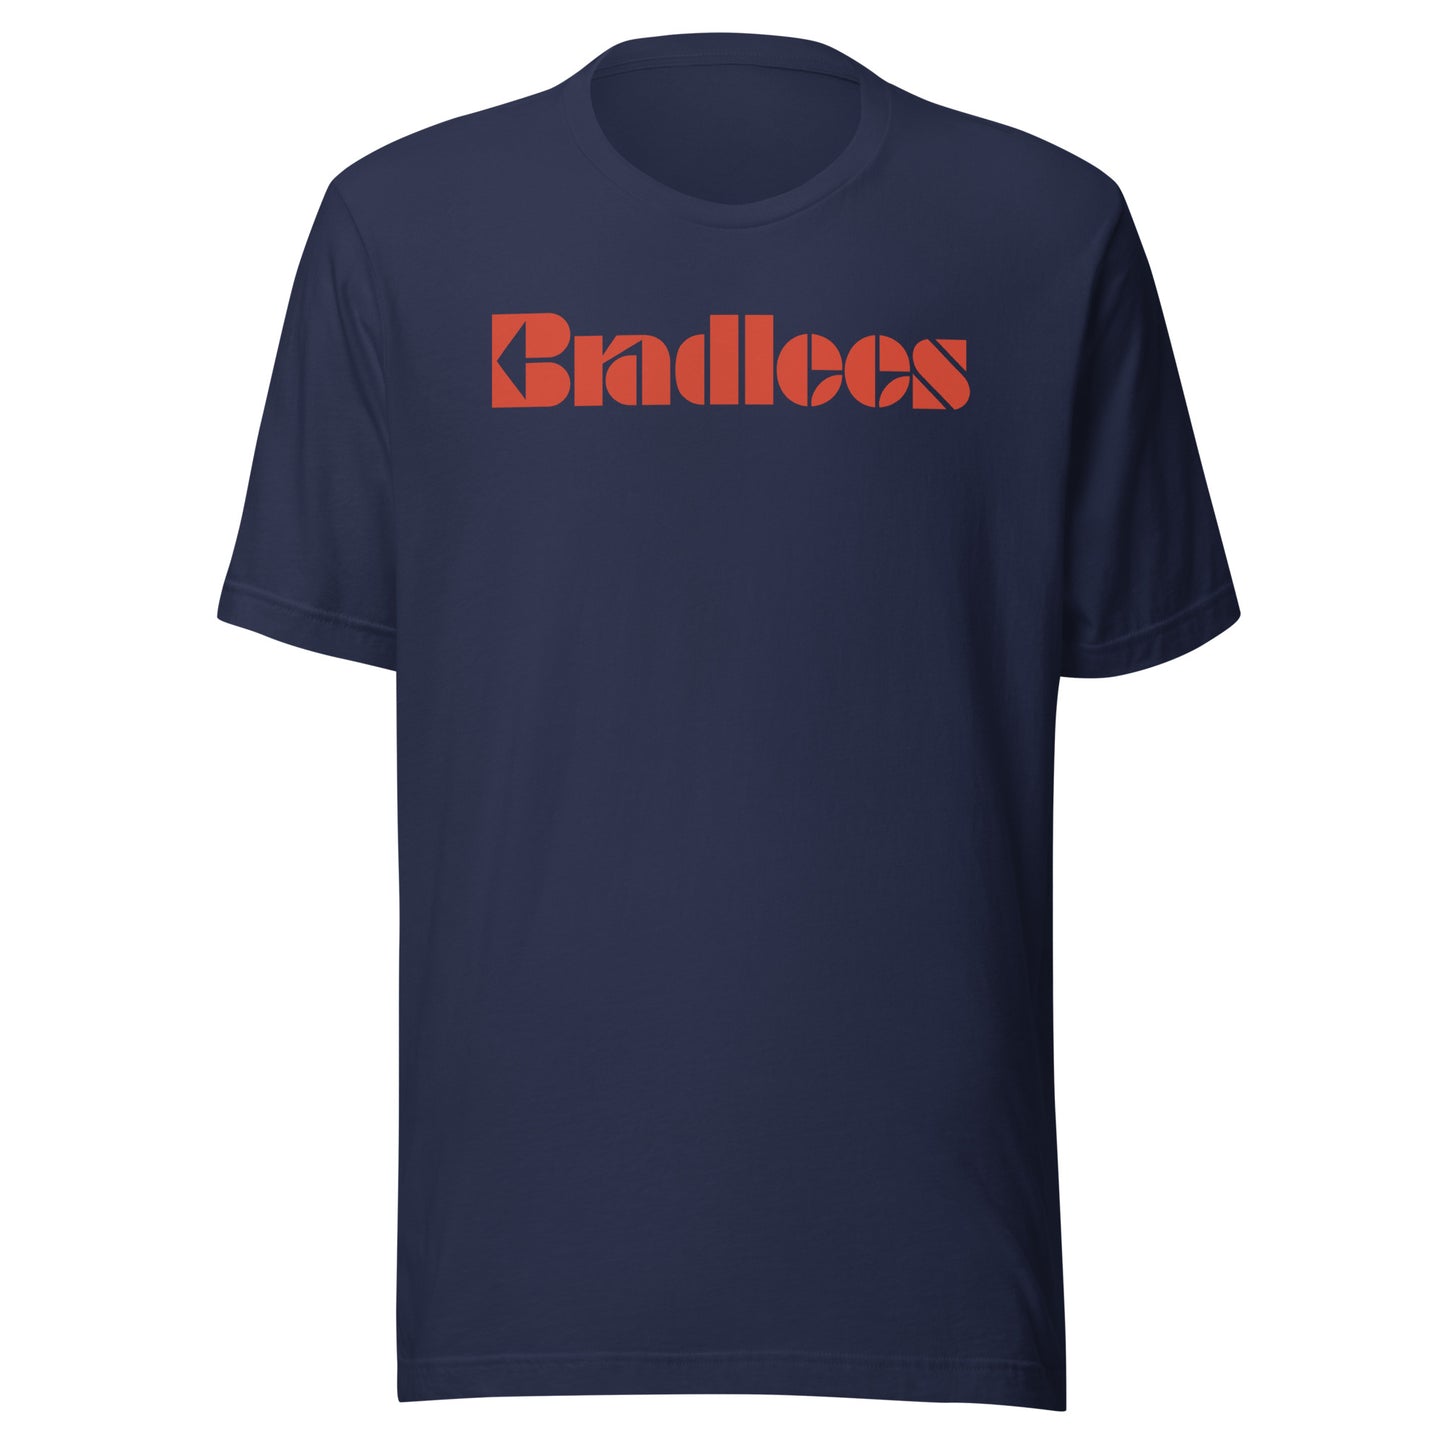 Bradlees Unisex T-Shirt